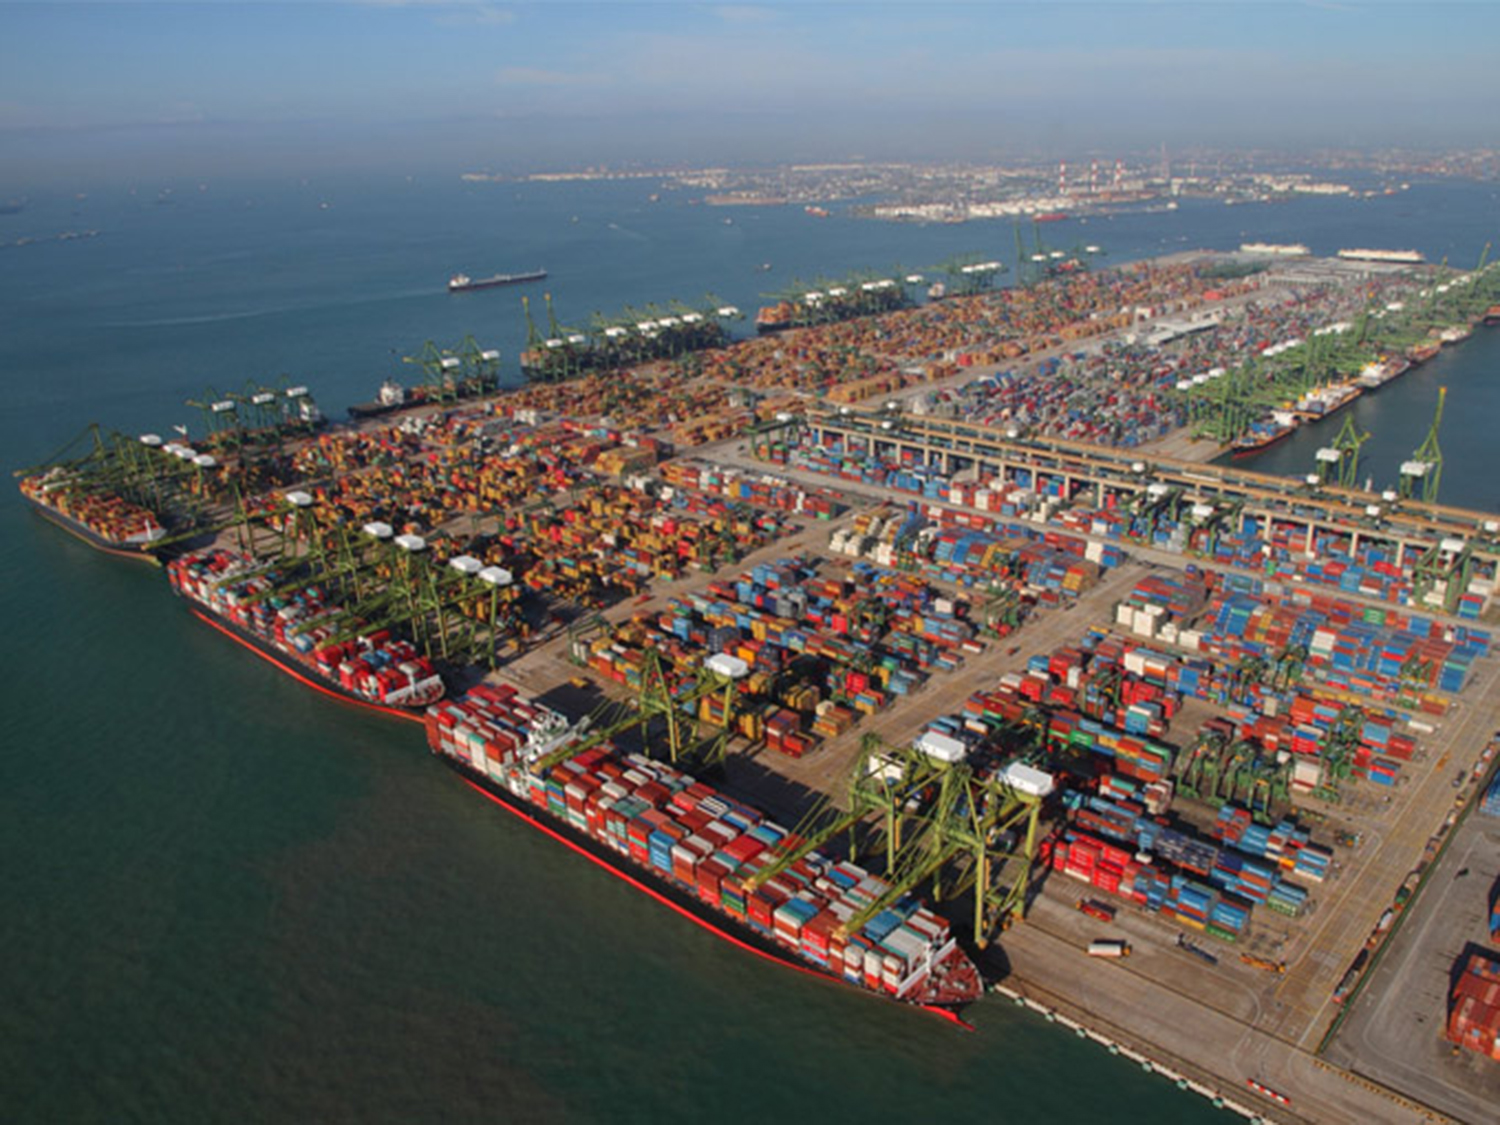 cảng biển lớn nhất Việt Nam